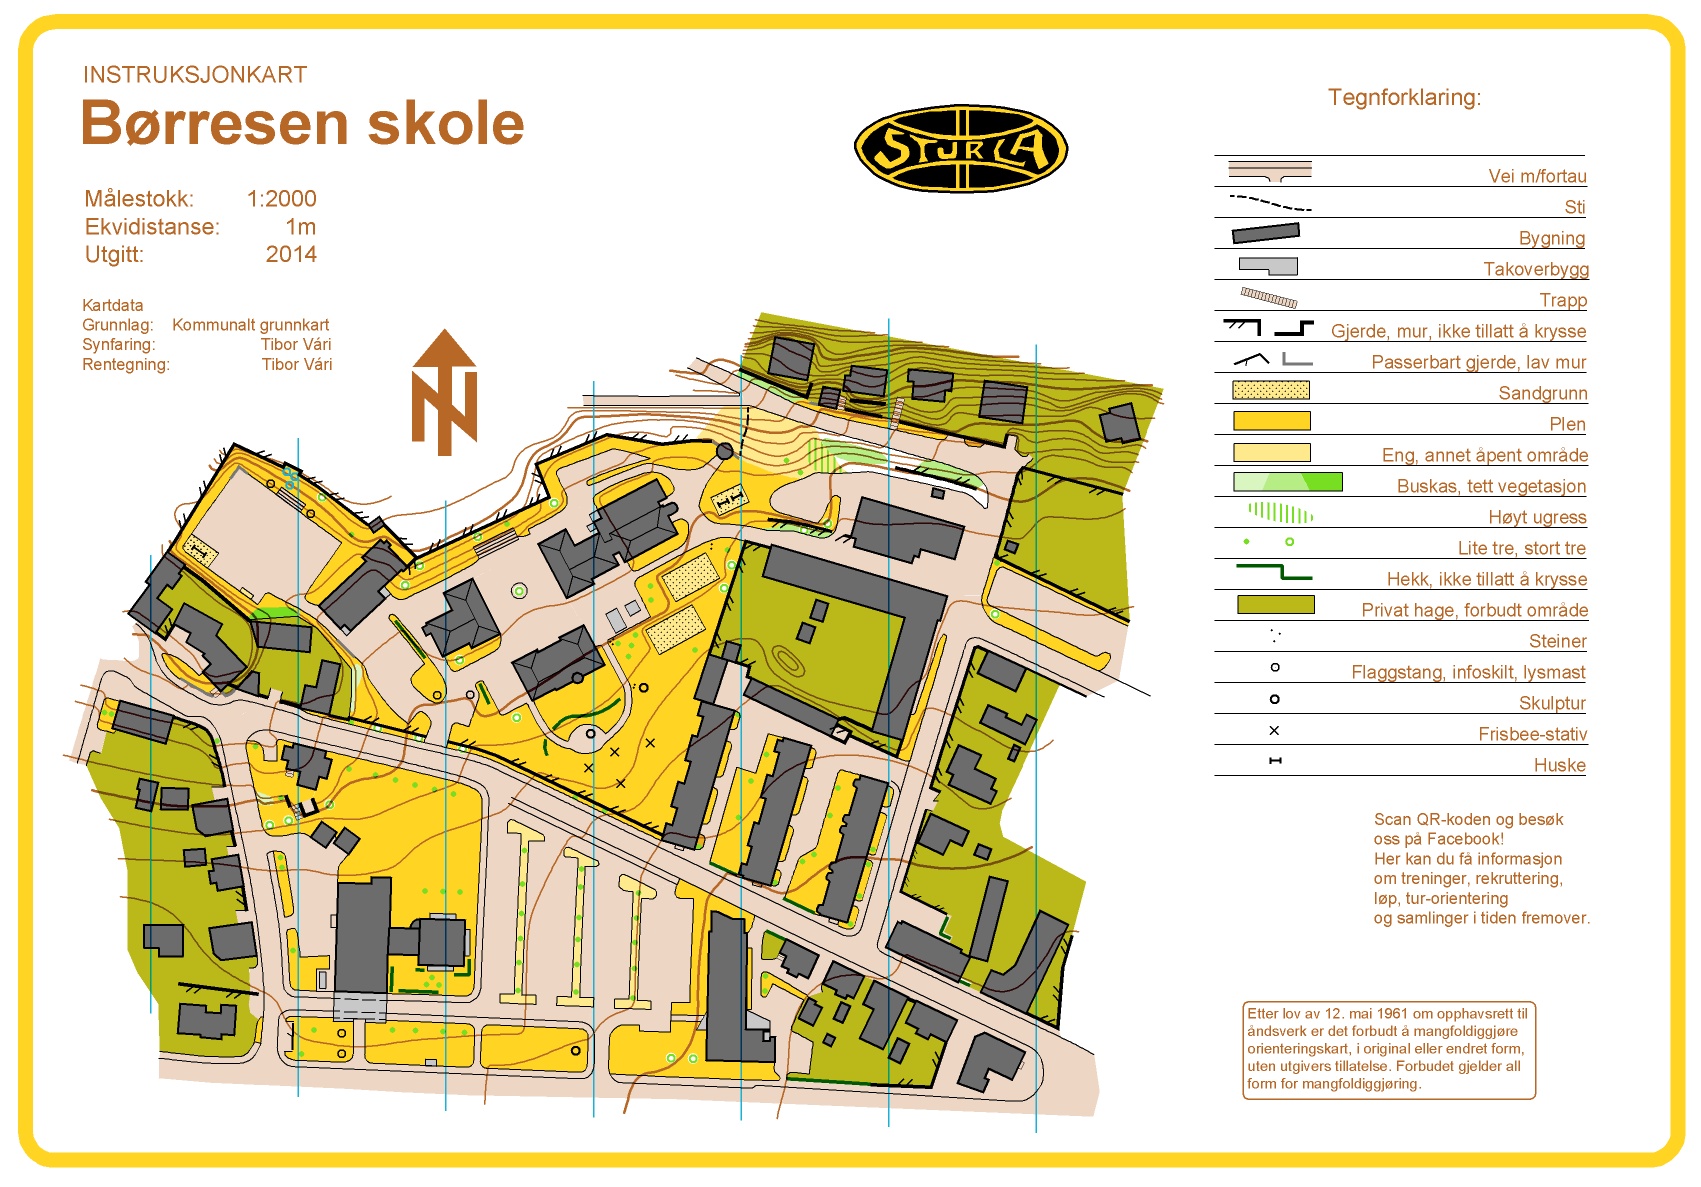 Instruksjonskart - Børresen (13/02/2014)